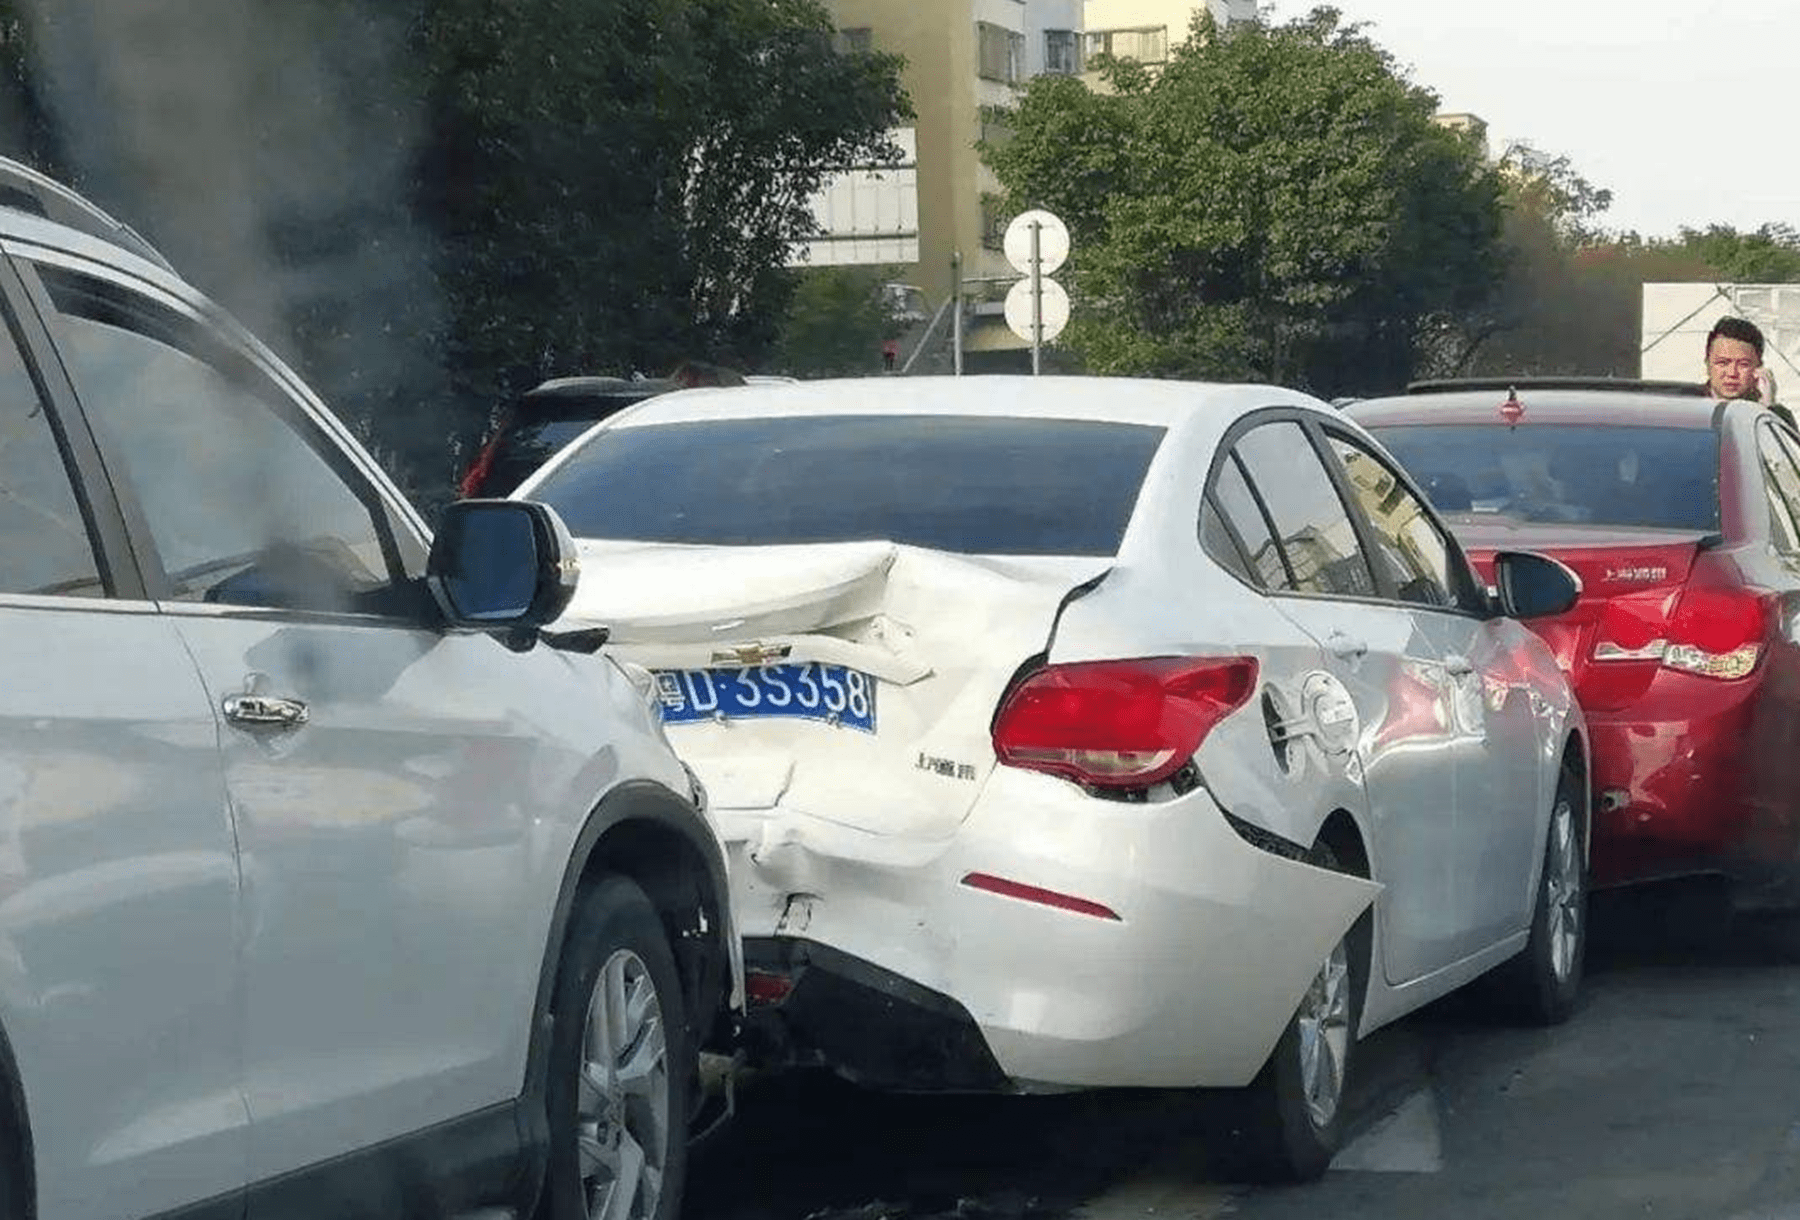 2022北京最近车祸图片